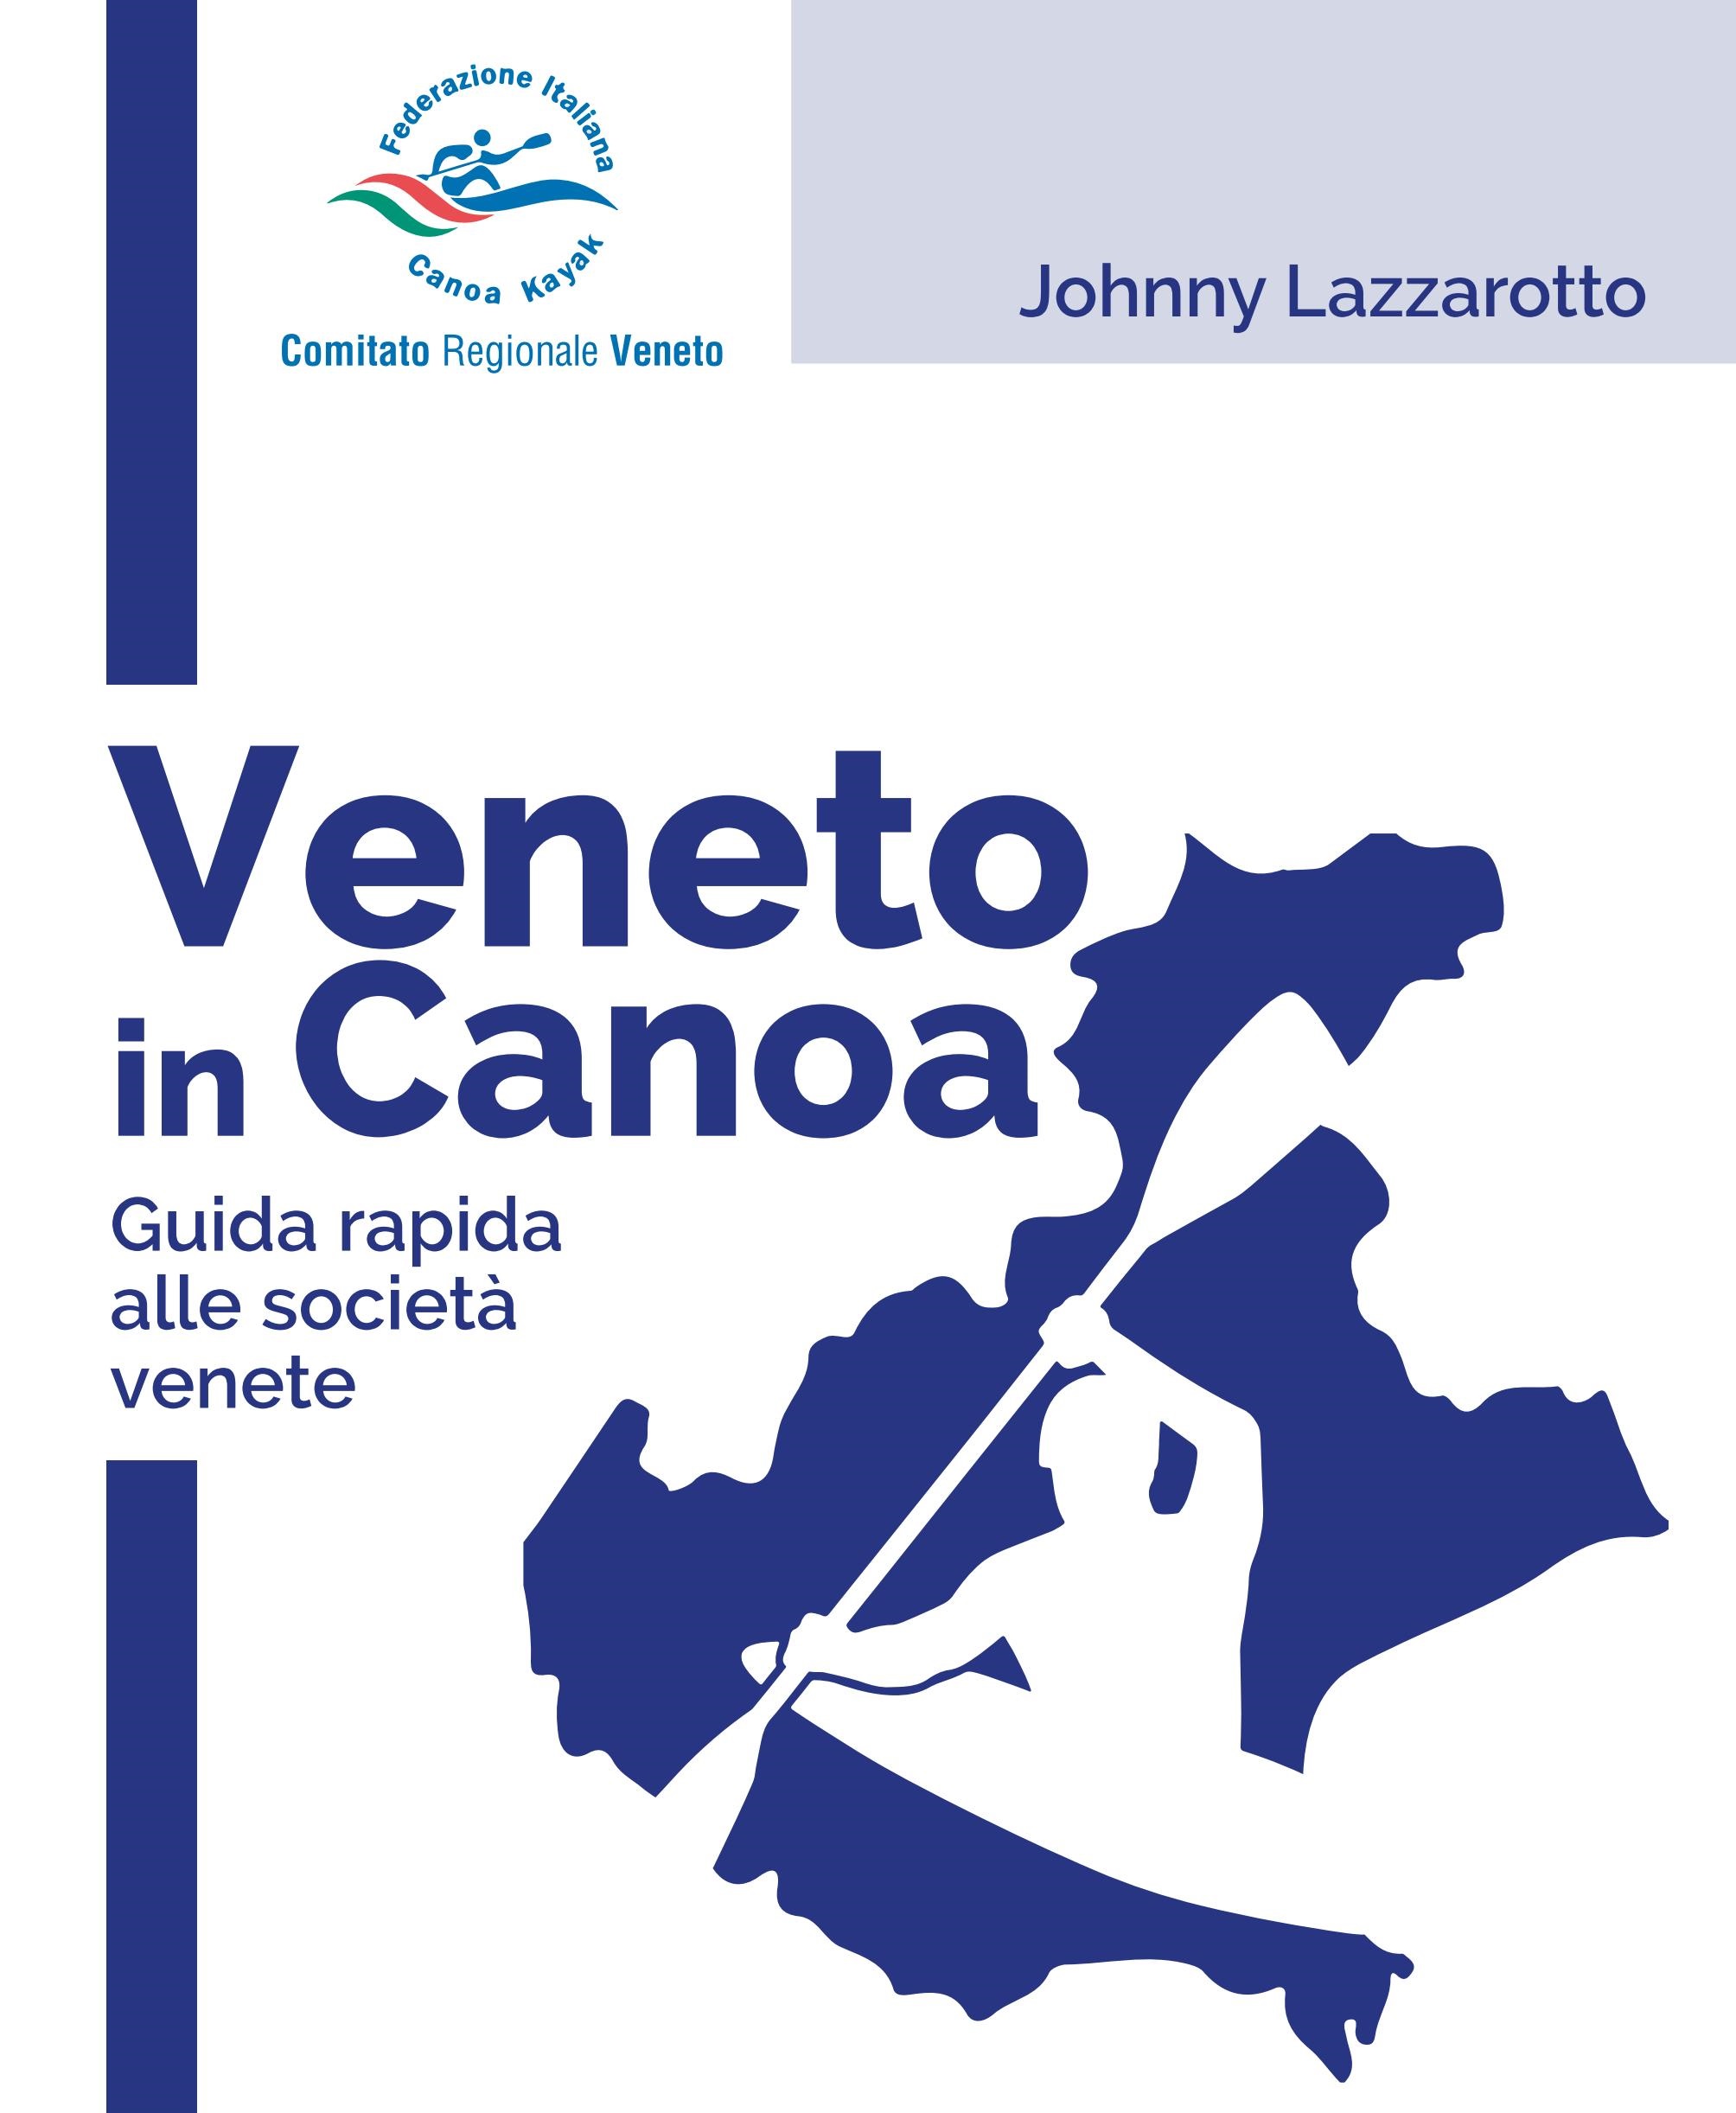 Panziera Buno Almanacco Canoa Club 01